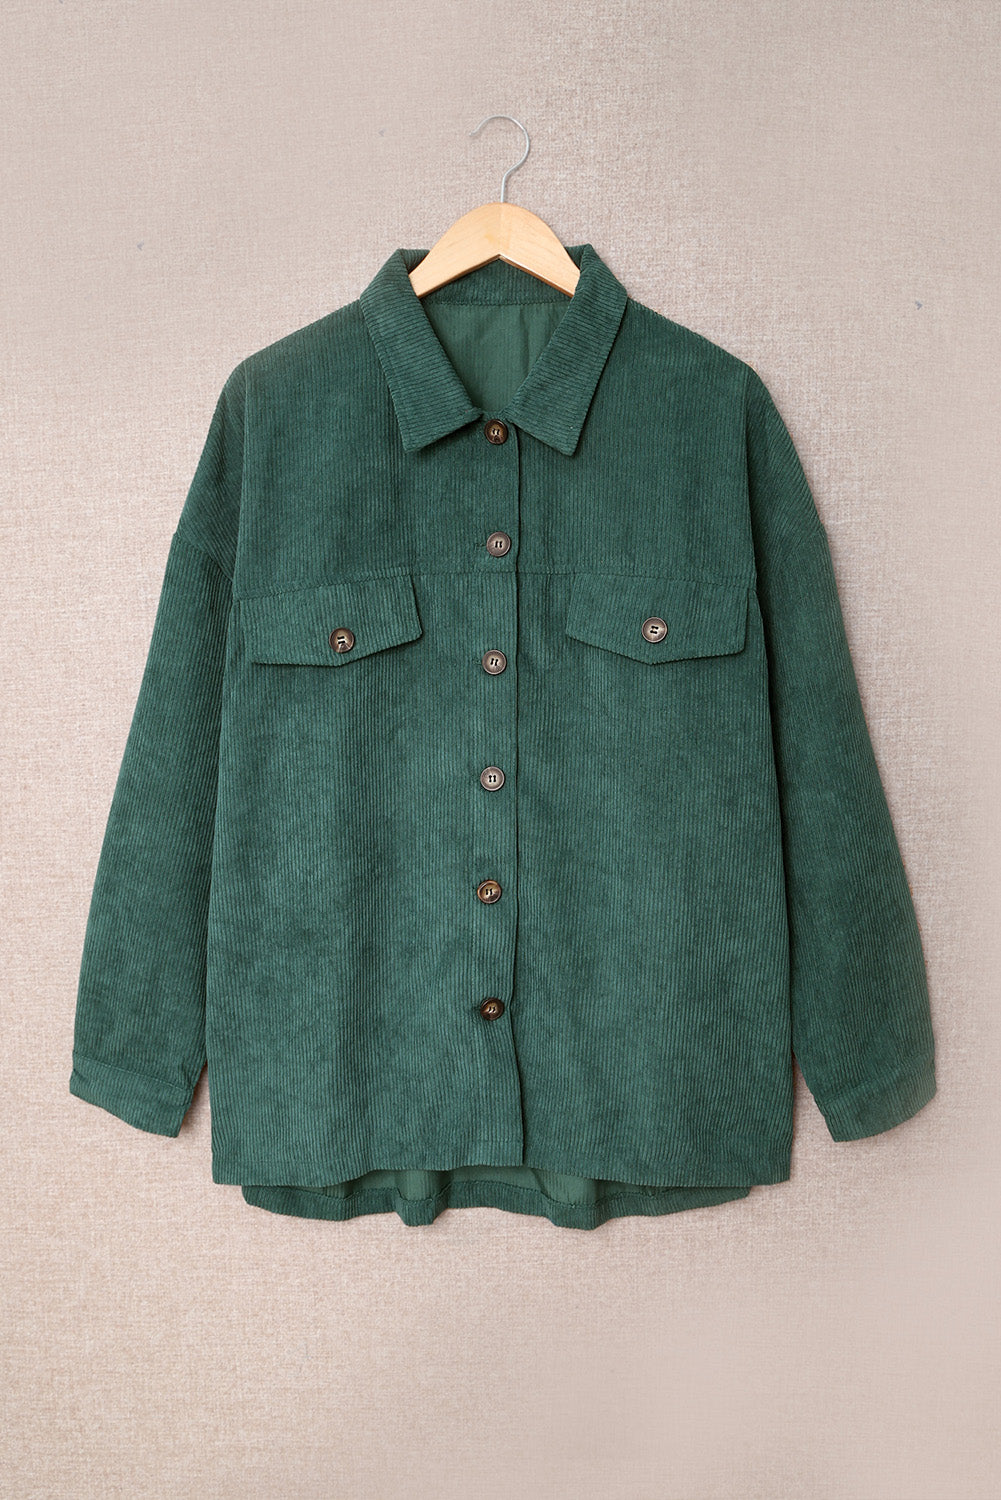 Fall Corduroy Long Sleeve Button-up Shirt Coat